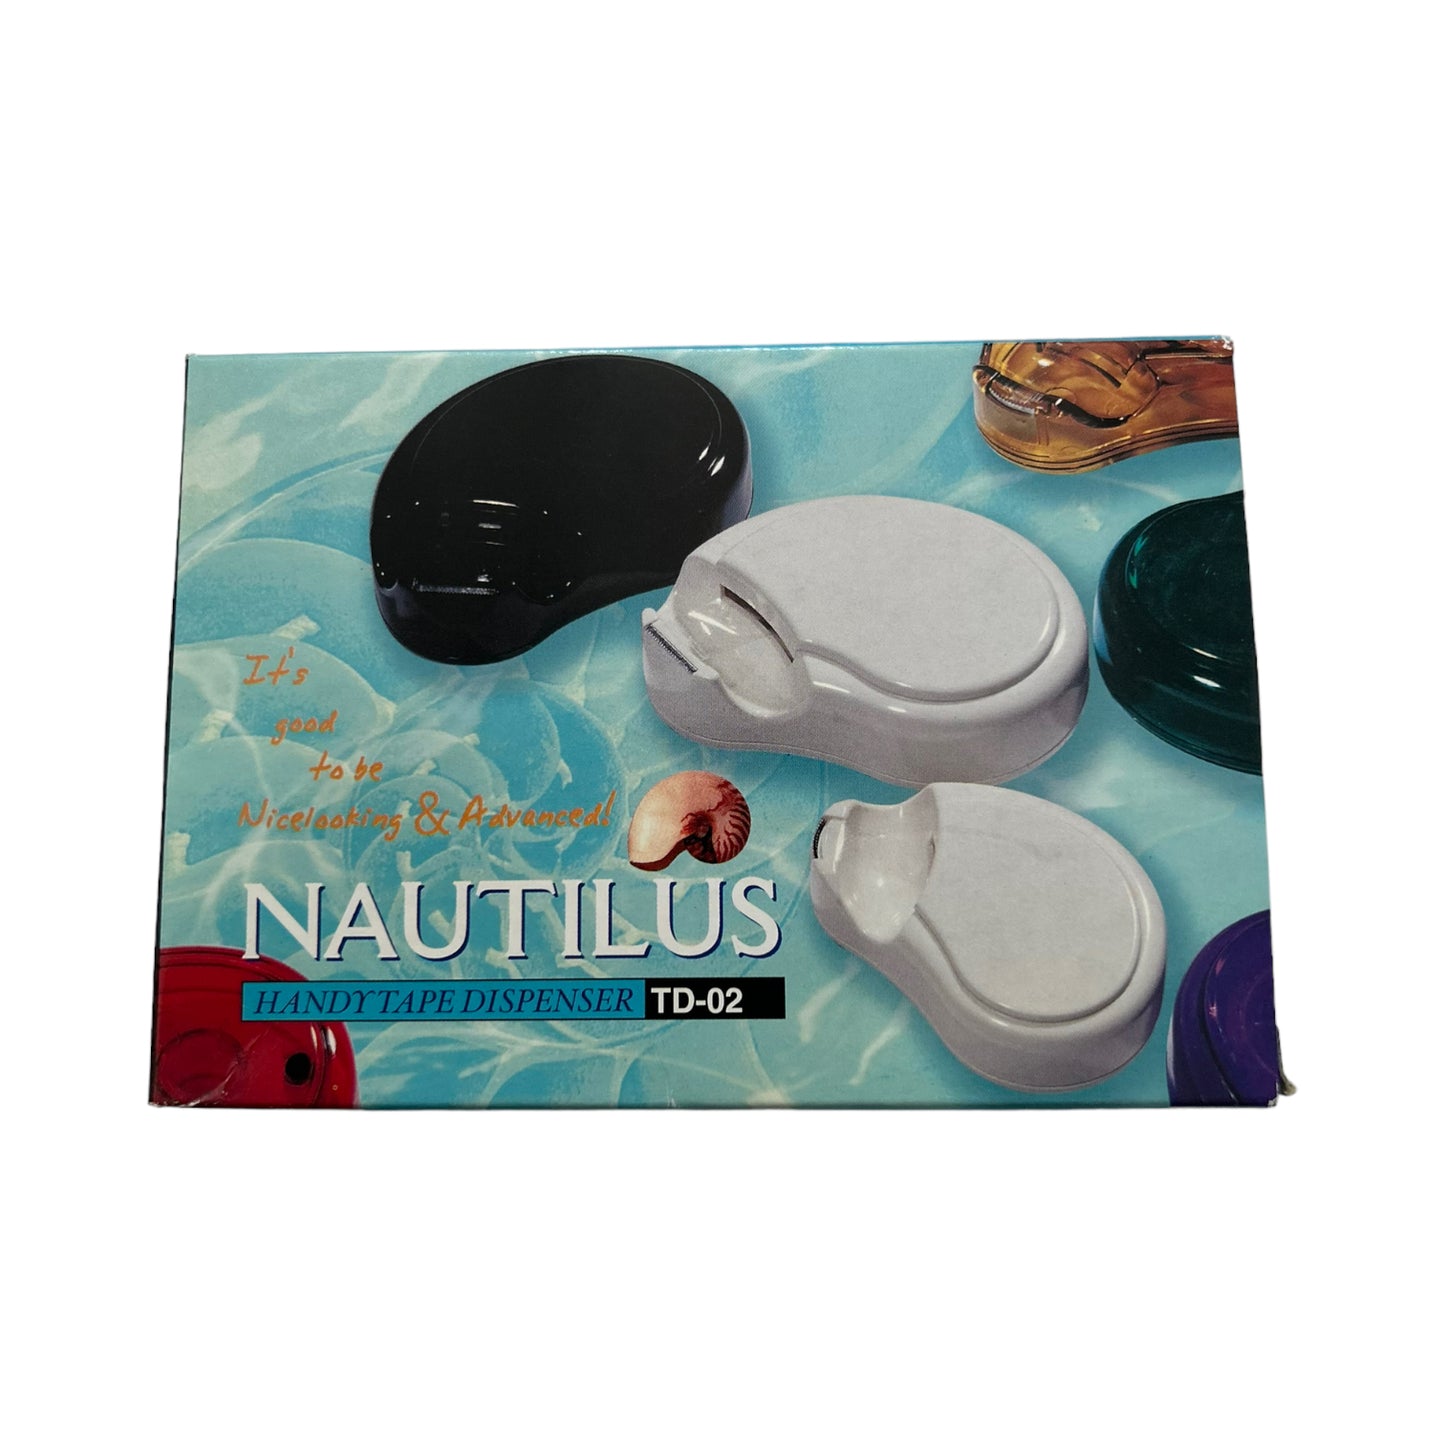 Nautilus Handy Tape Dispenser 24-Pack